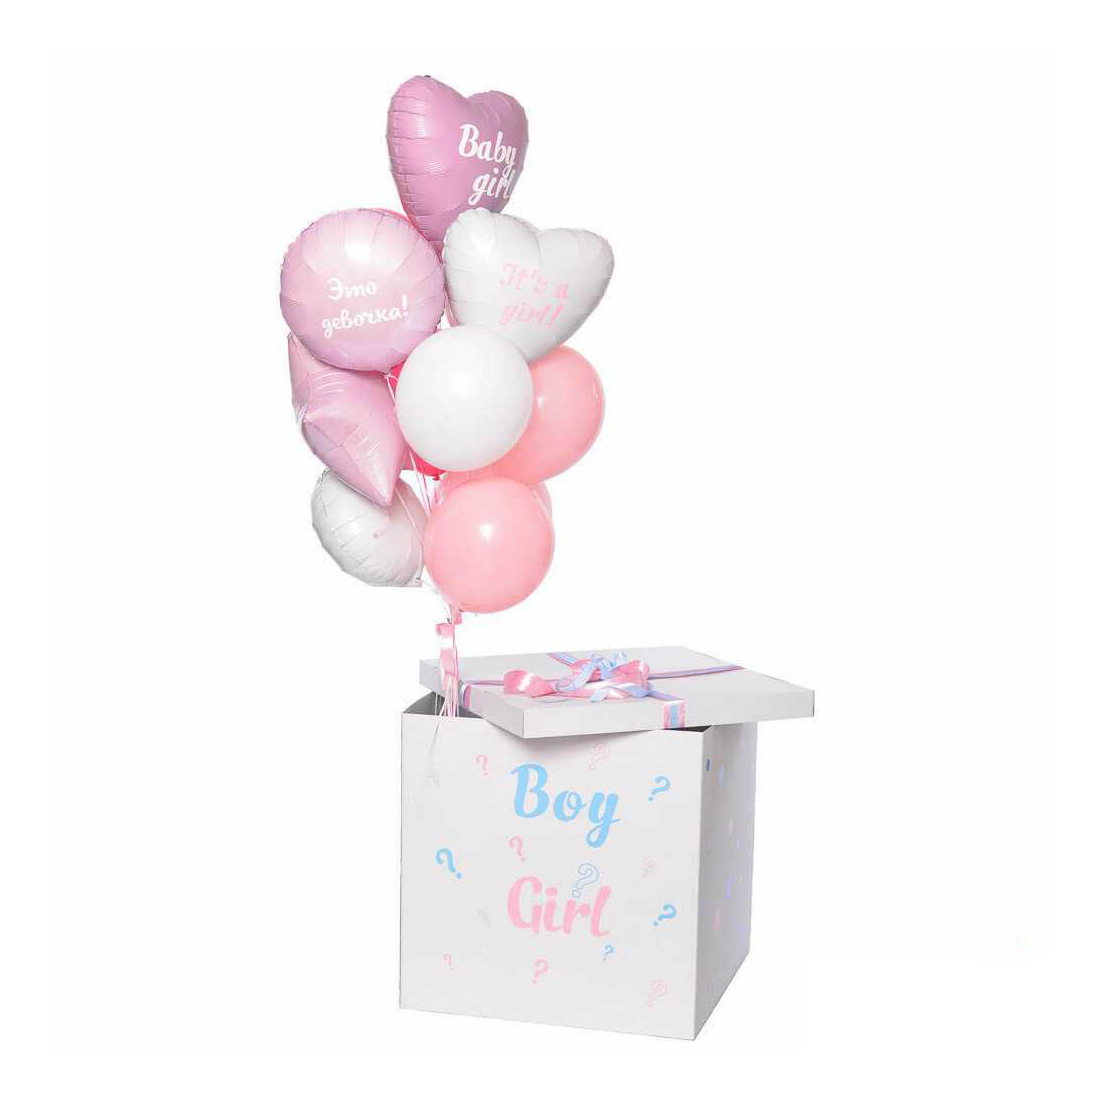 Белая коробка с шарами. Коробка с шарами. Коробка с воздушными шариками. Коробка сюрприз с воздушными шарами. Коробка с шарами для девочки.